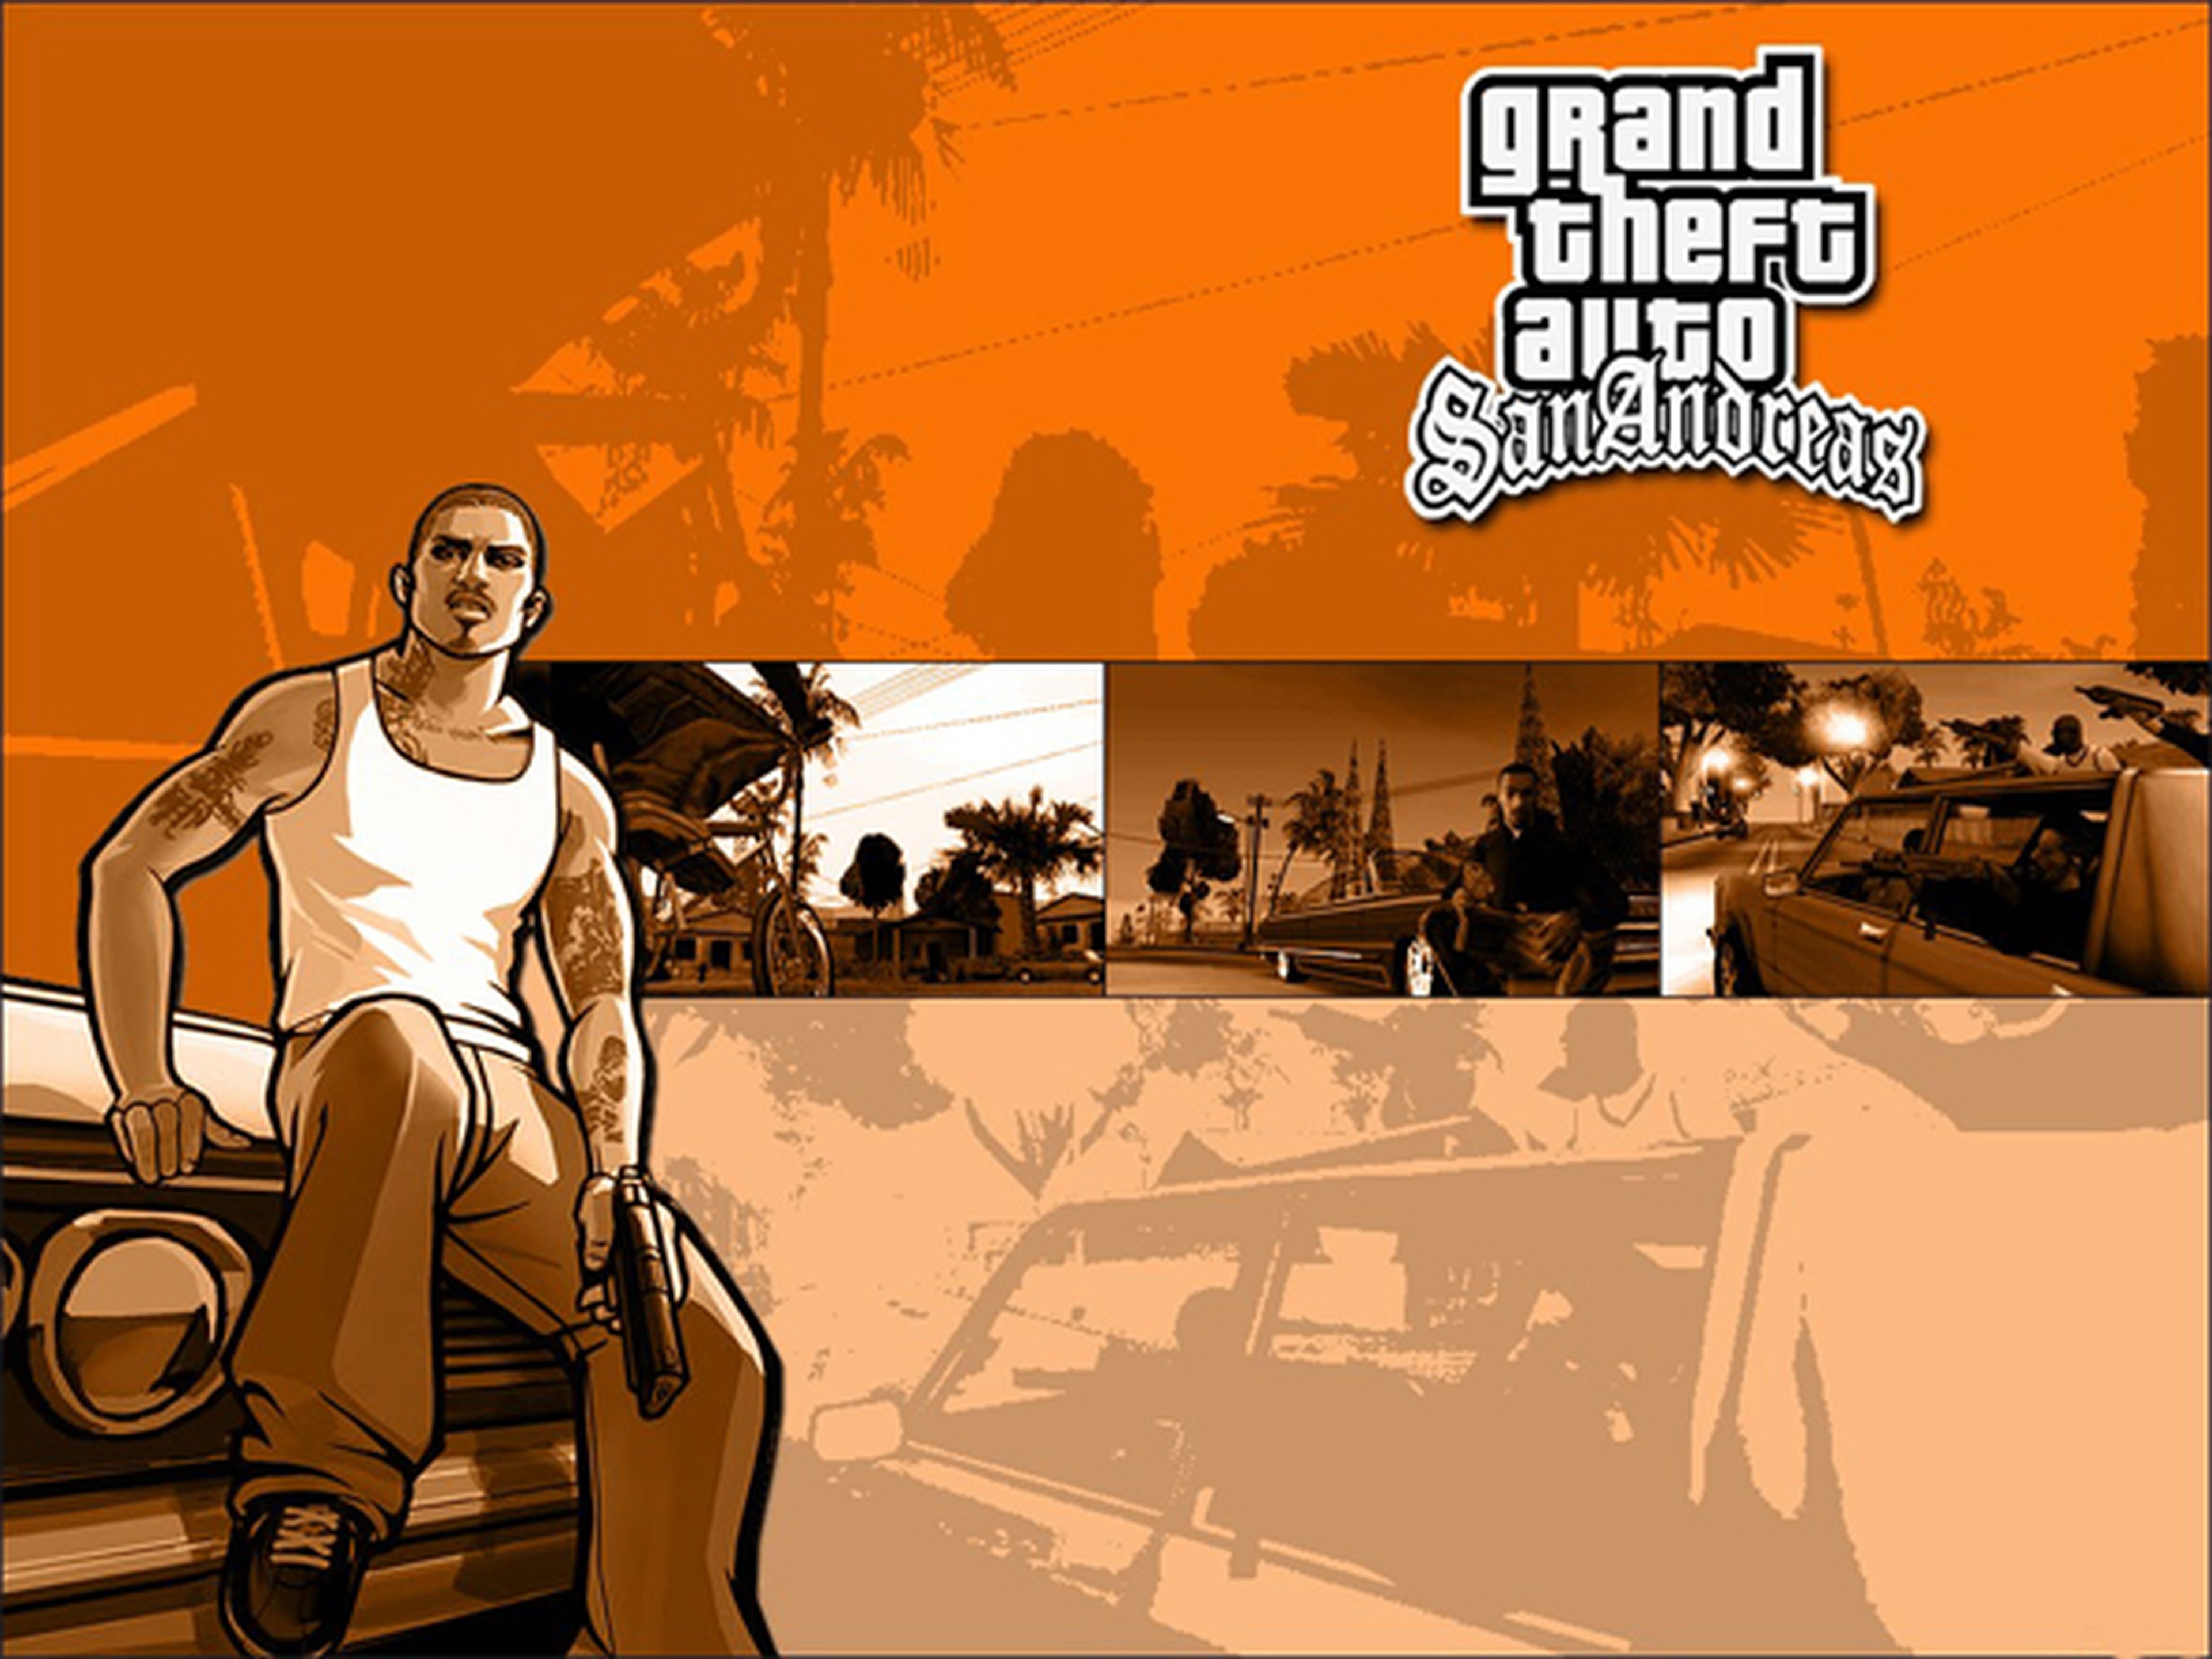 GTA San Andreas por fin disponible en PlayStation 3